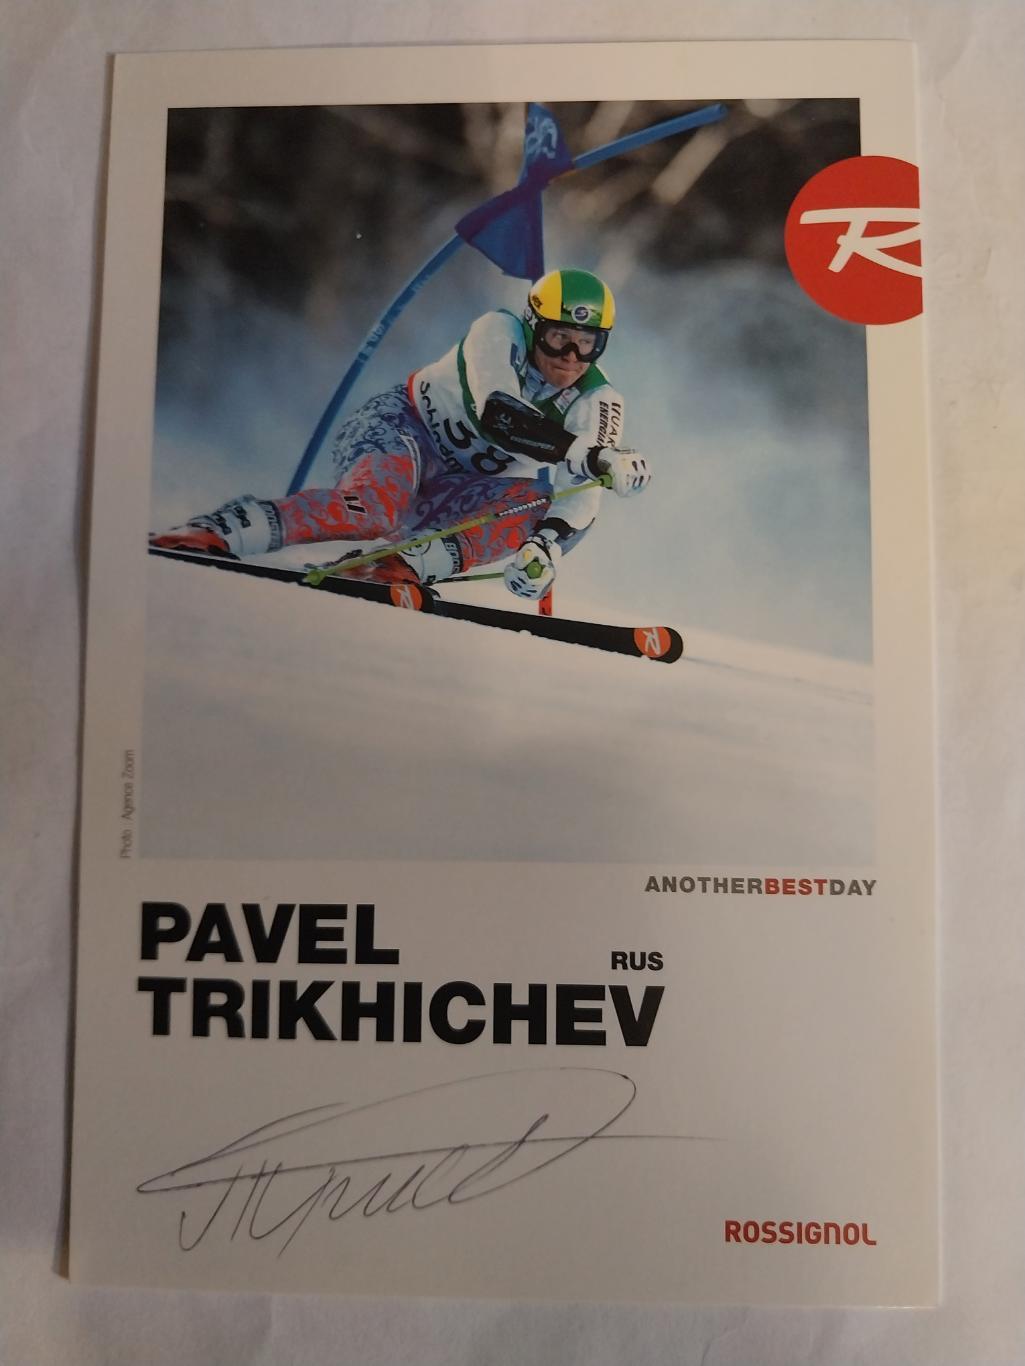 Павел Трихичев, горные лыжи, чемпион России